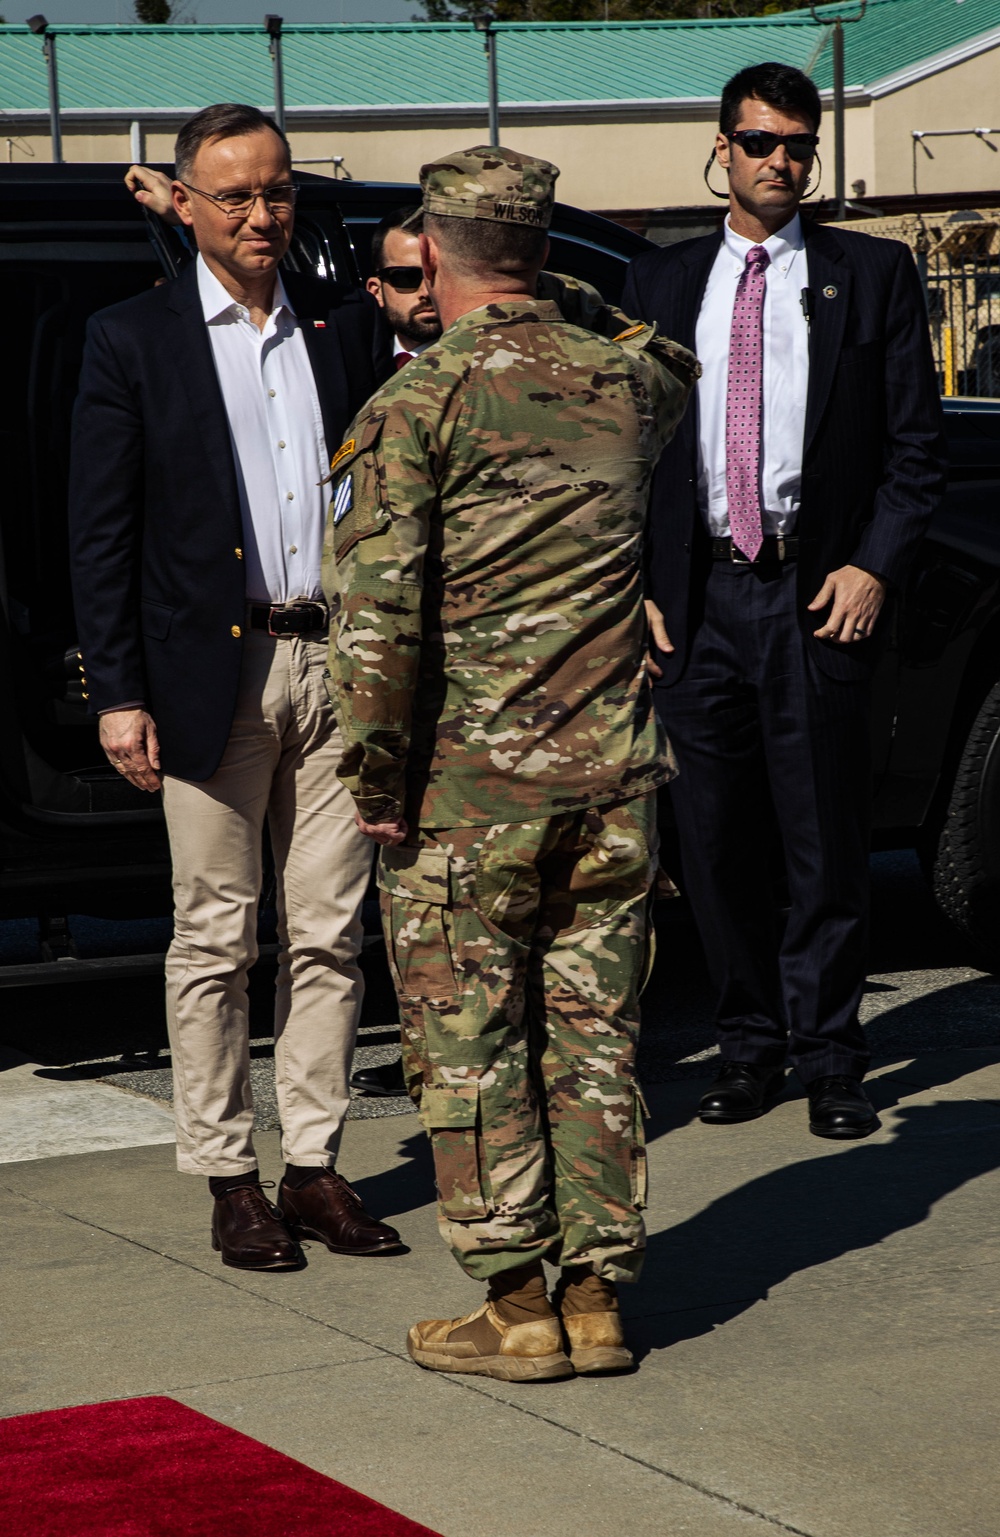 Polish President Andzrej Duda visits Fort Stewart